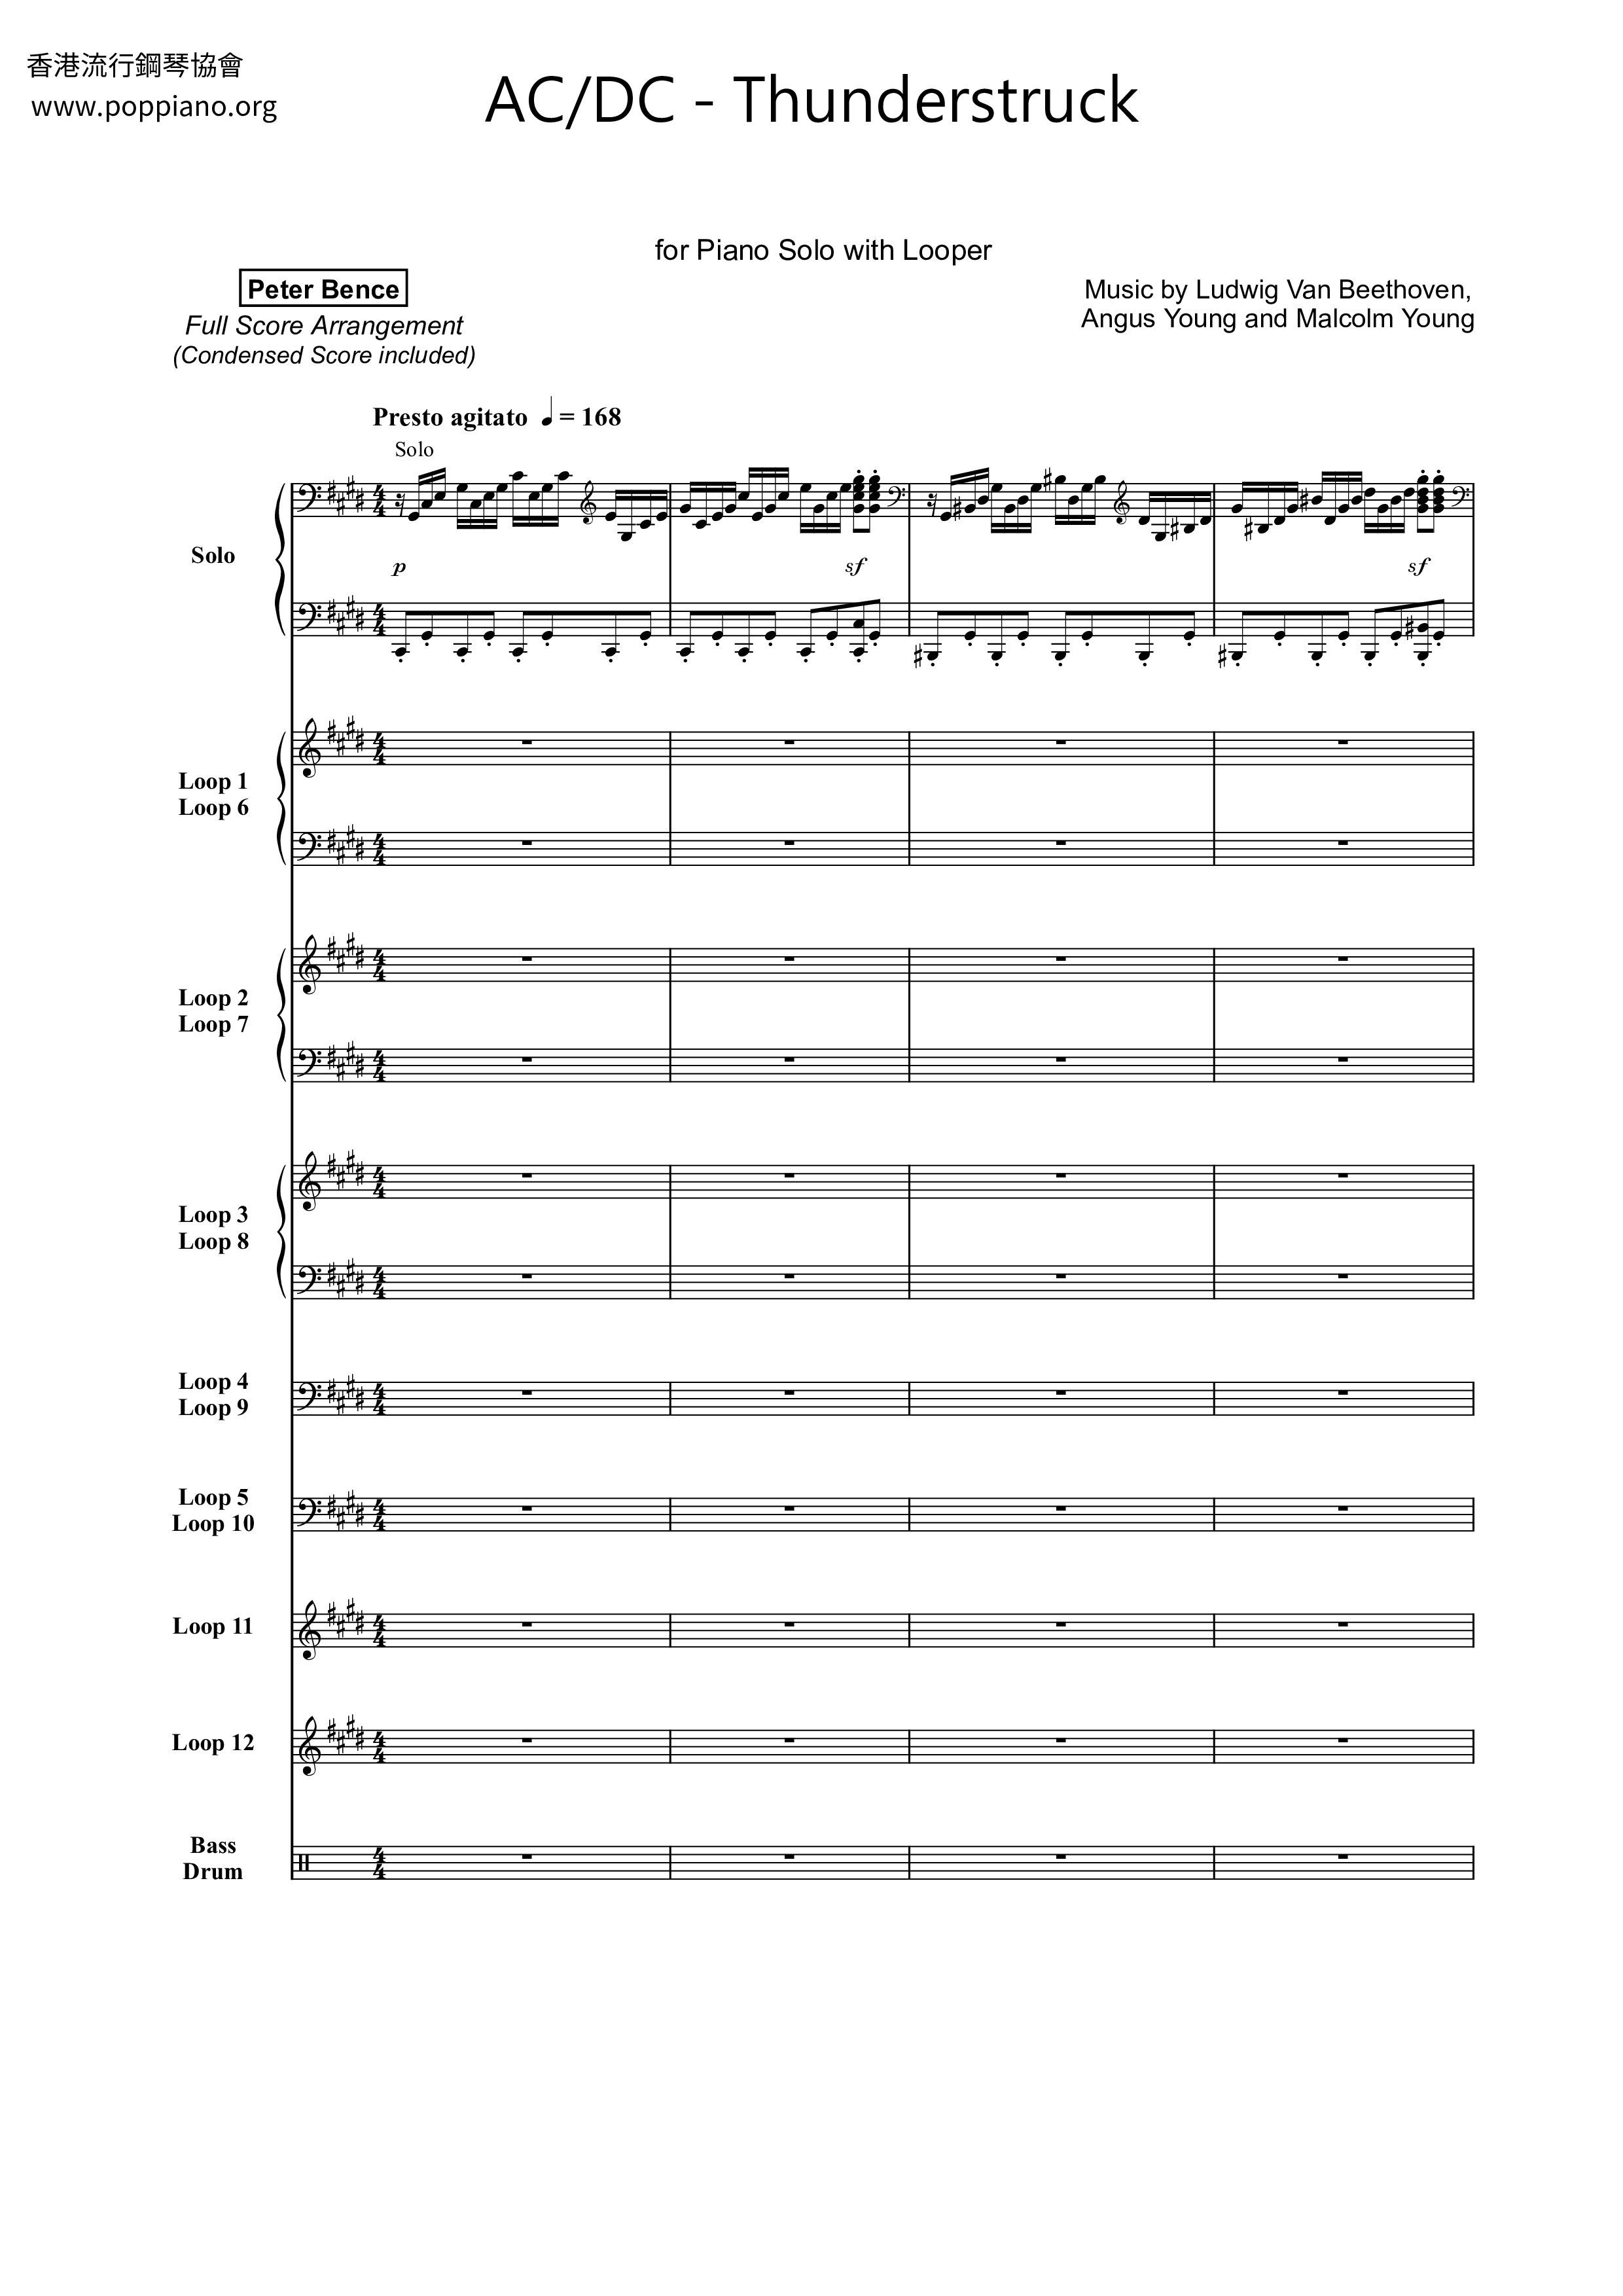 ☆ AC/DC-Thunderstruck Sheet Music pdf, - Score Download ☆